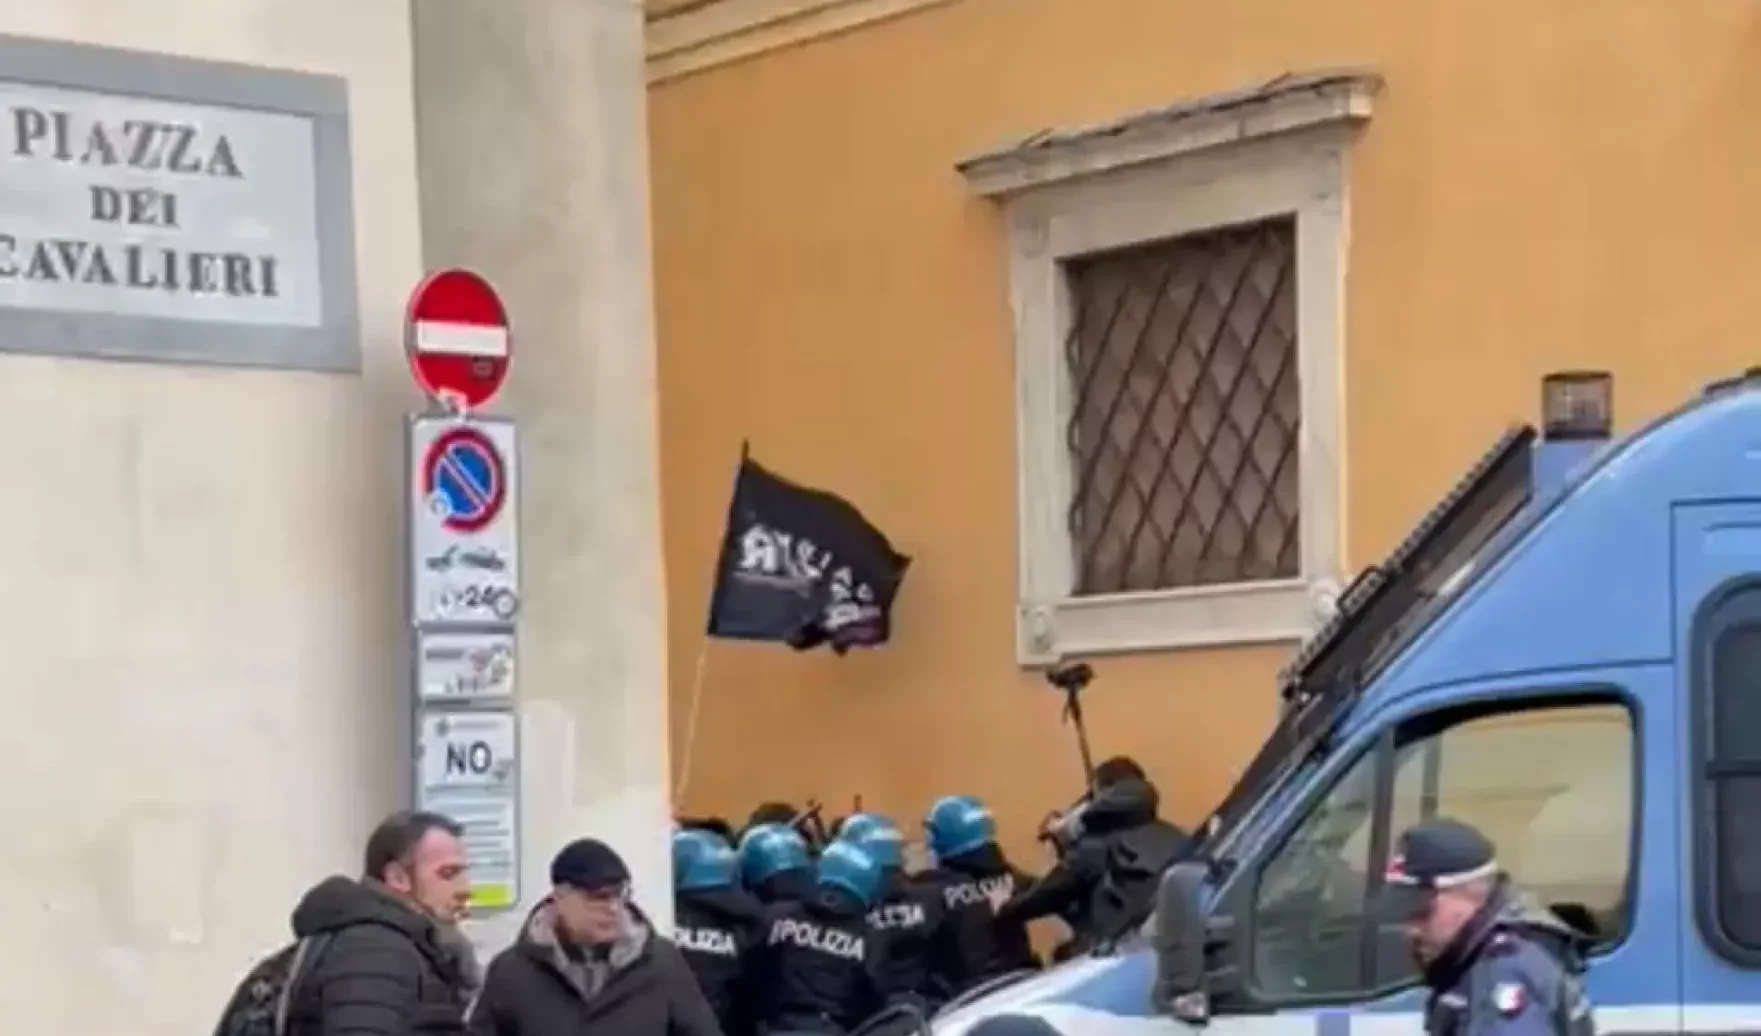 Studenti manganellati: la polizia ammette 'difficoltà operative' e la procura di Pisa apre un'indagine